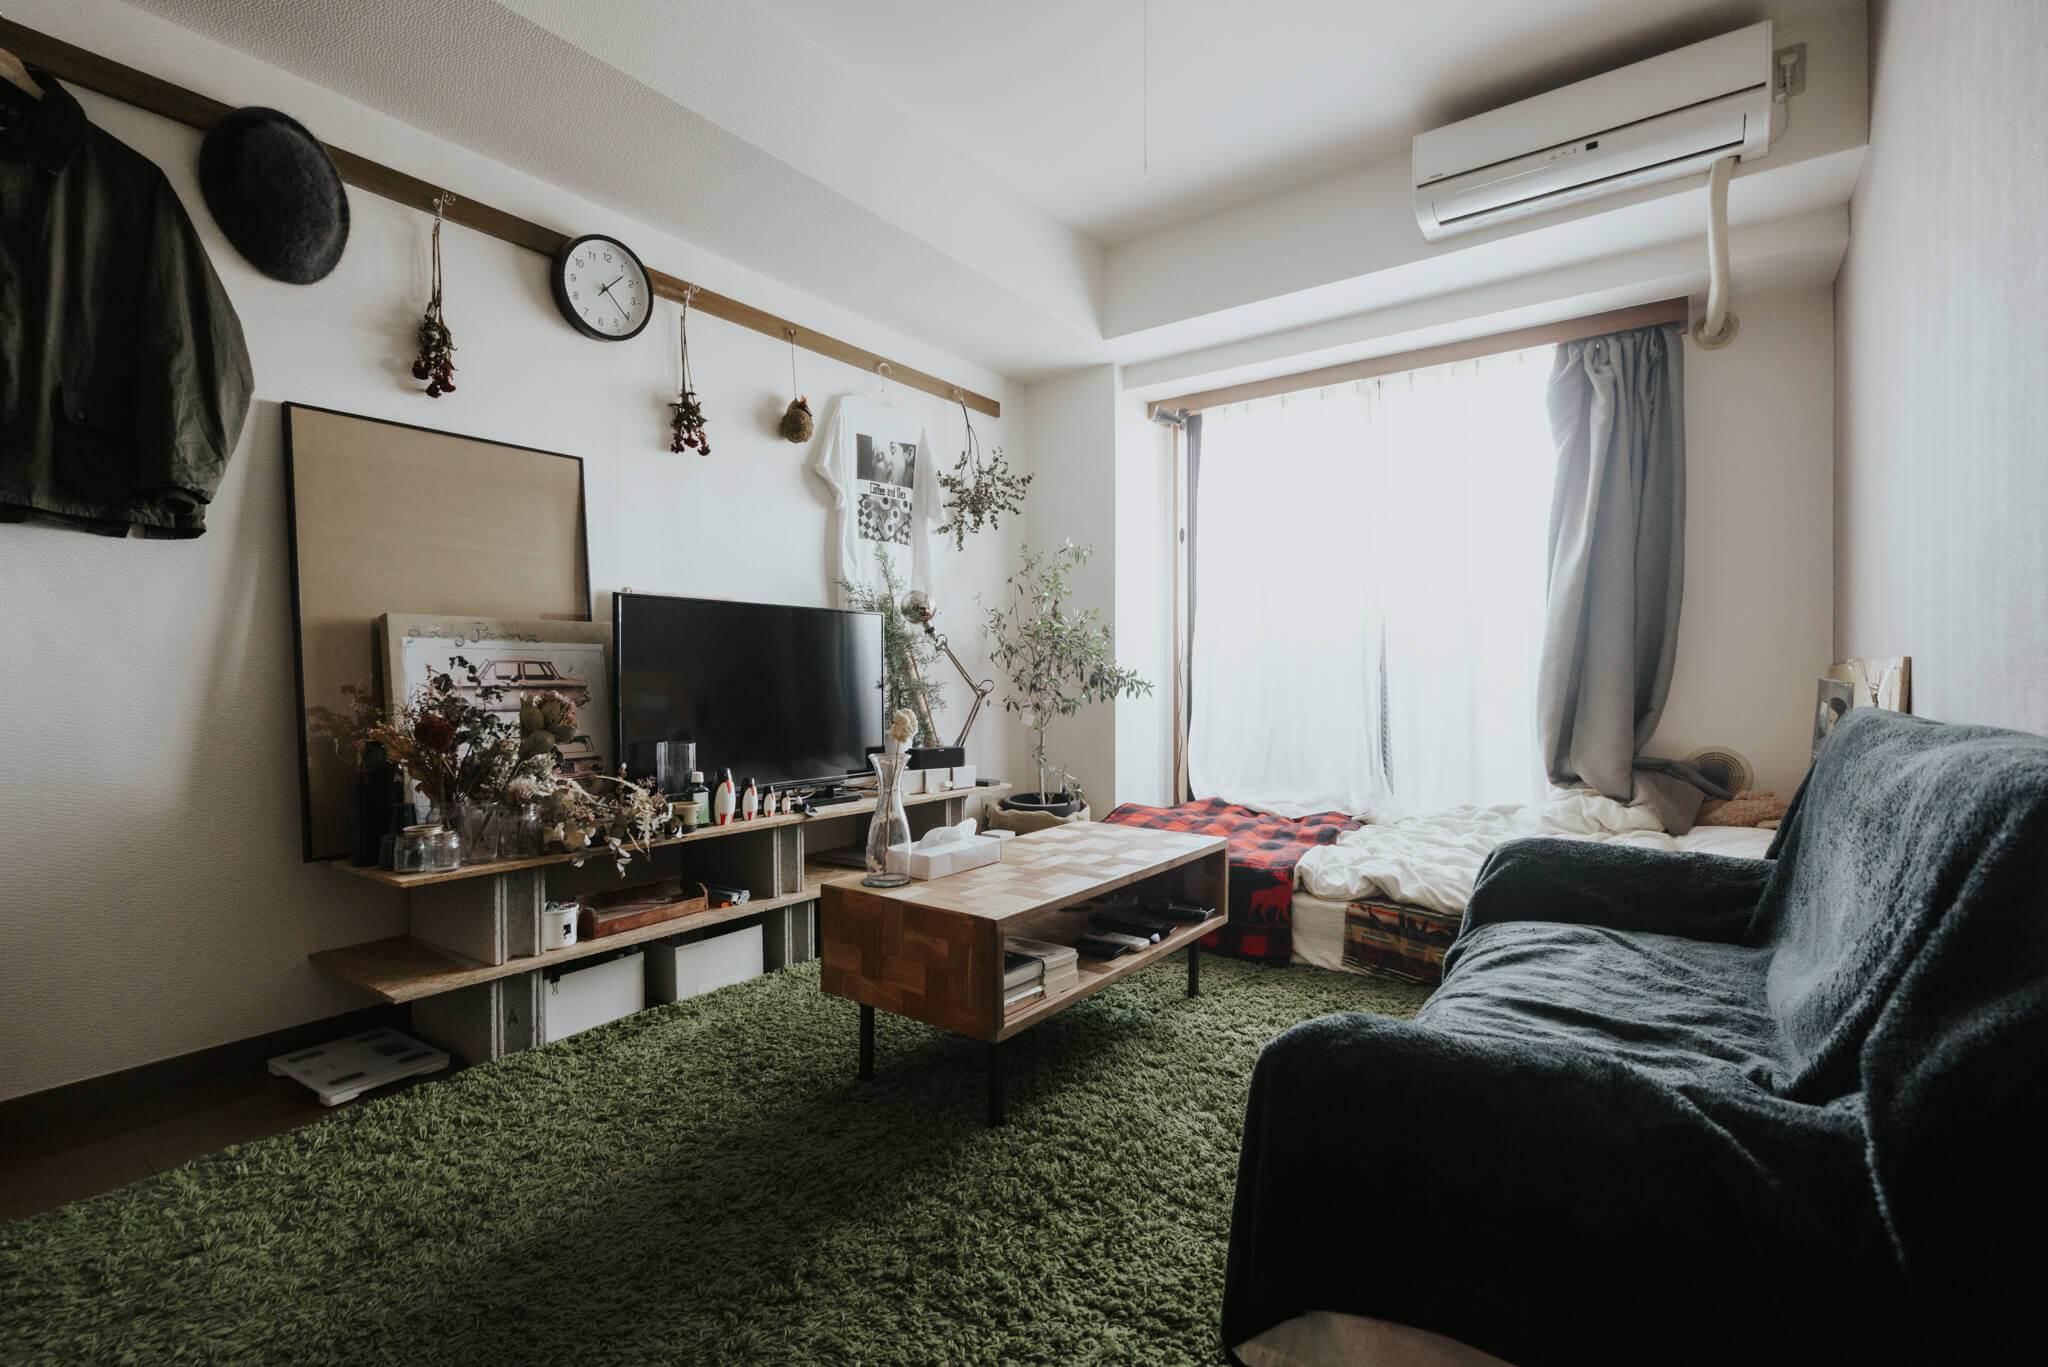 6畳1kの一人暮らし 家具やインテリアのレイアウトの基本まとめ Goodroom Journal